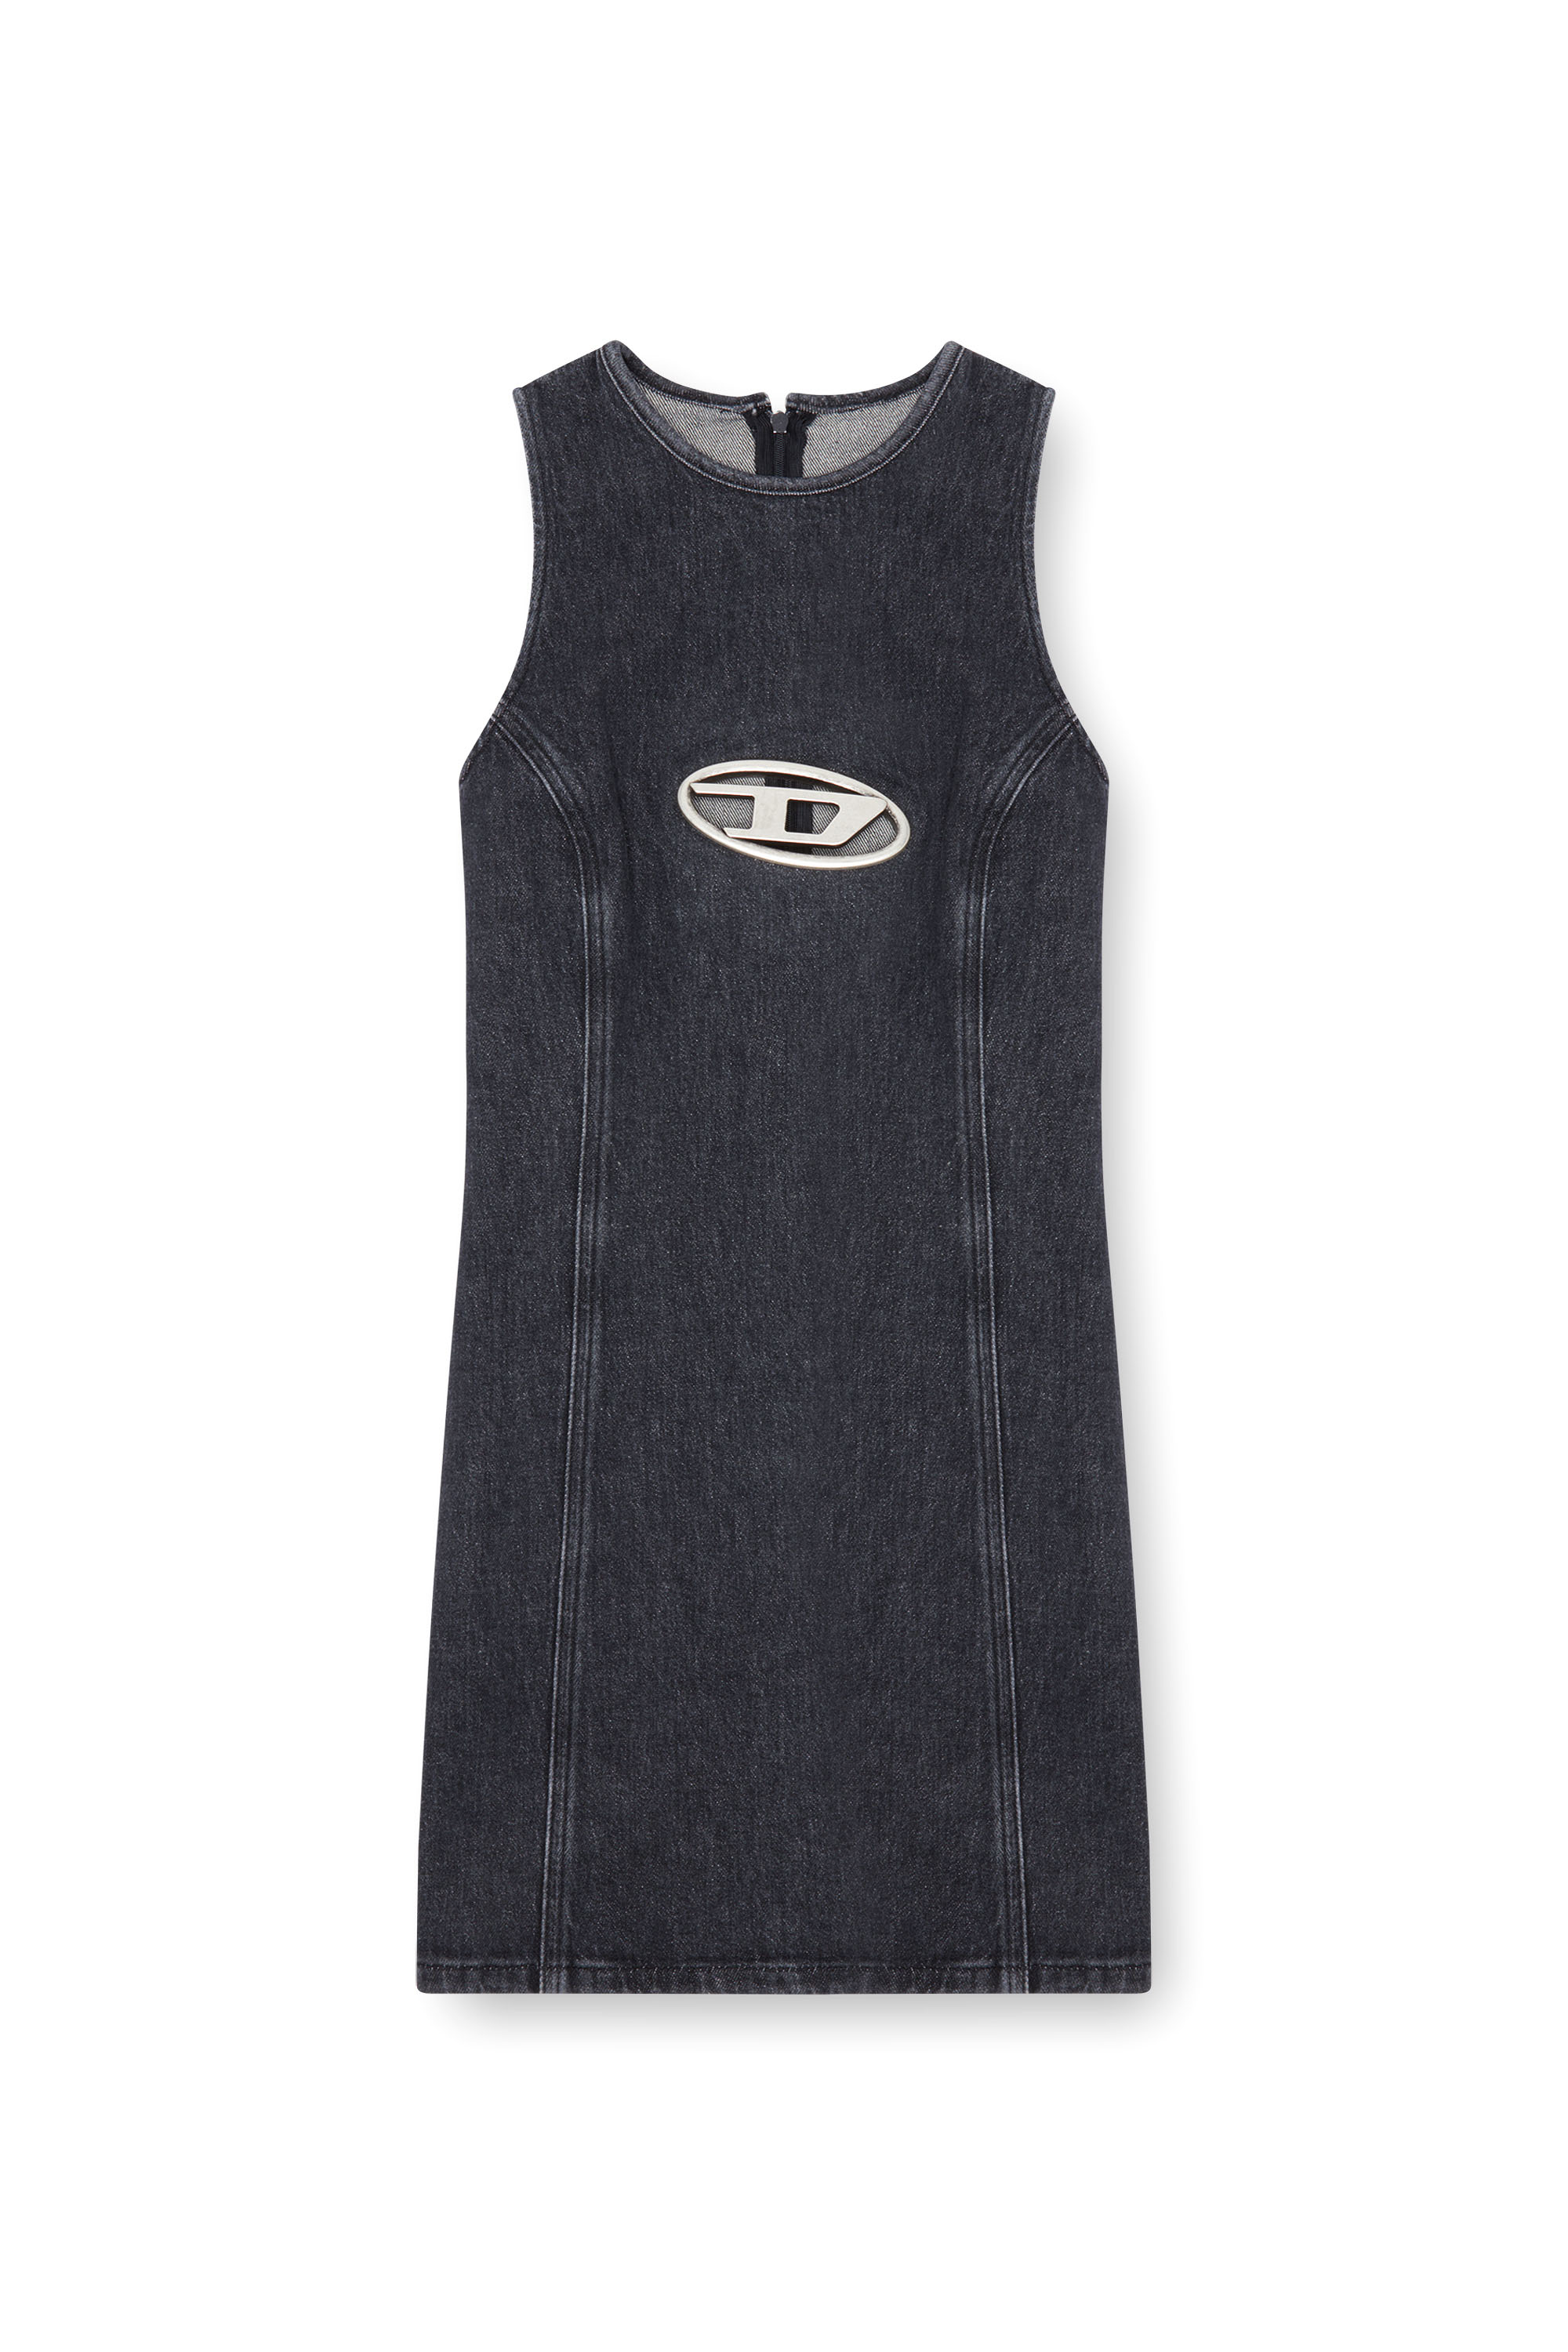 Diesel - DE-FERRIZ-FSD, Woman Denim mini dress with Oval D plaque in Black - Image 1